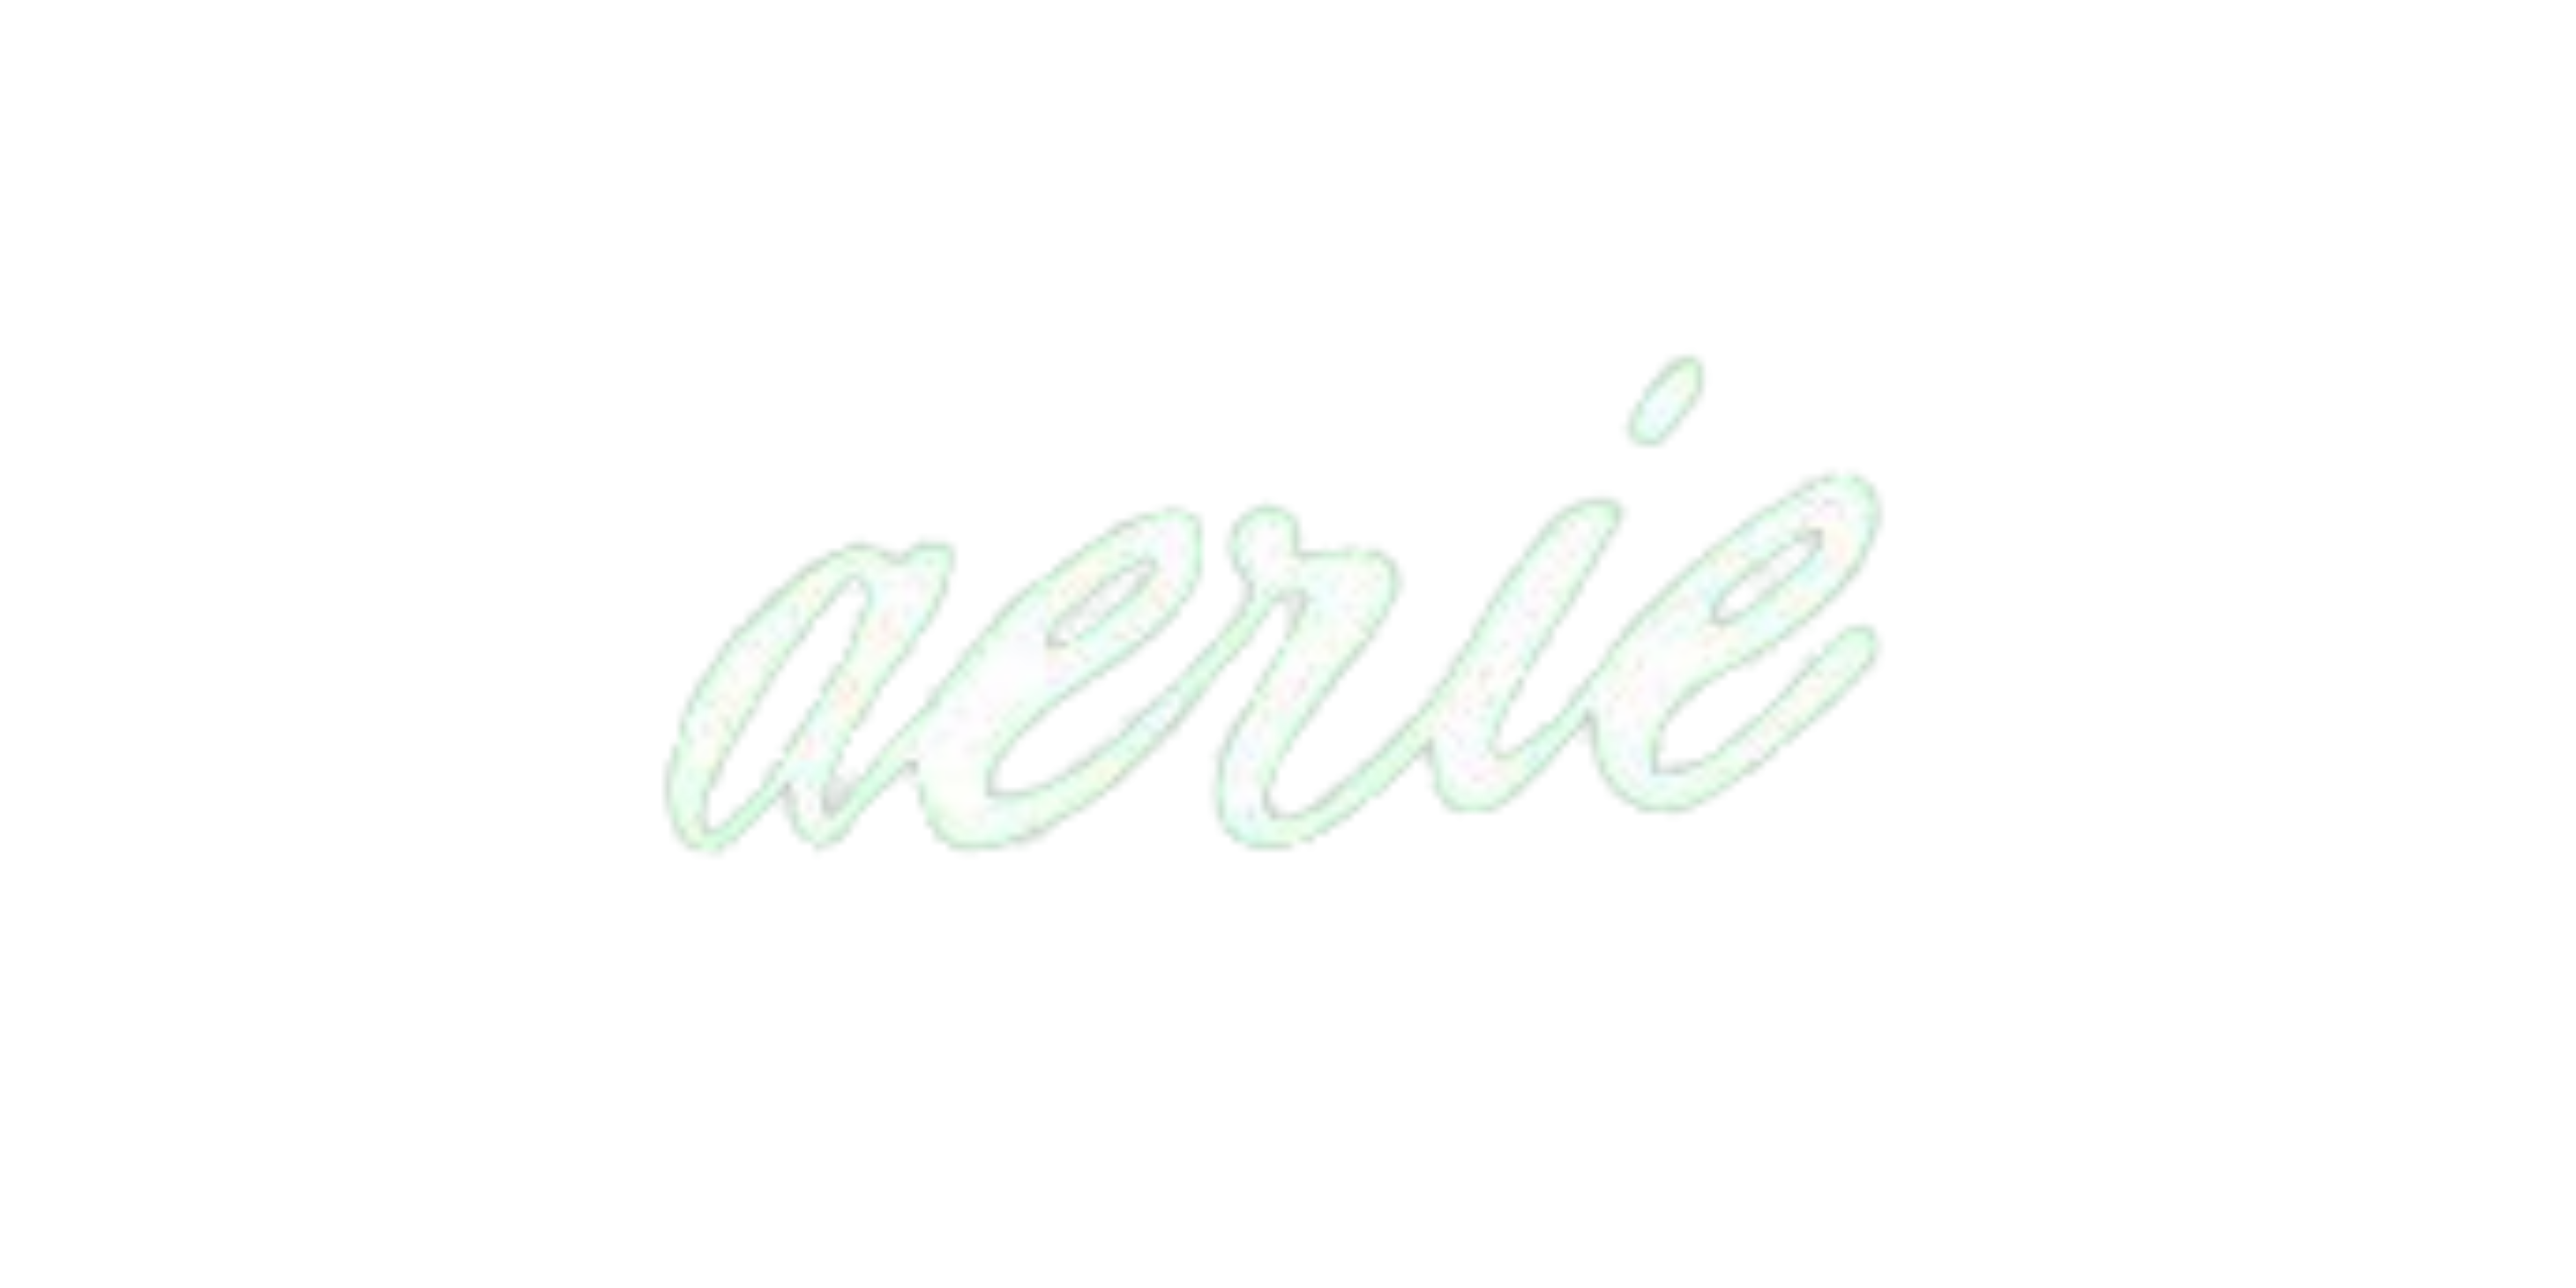 Aerie logo